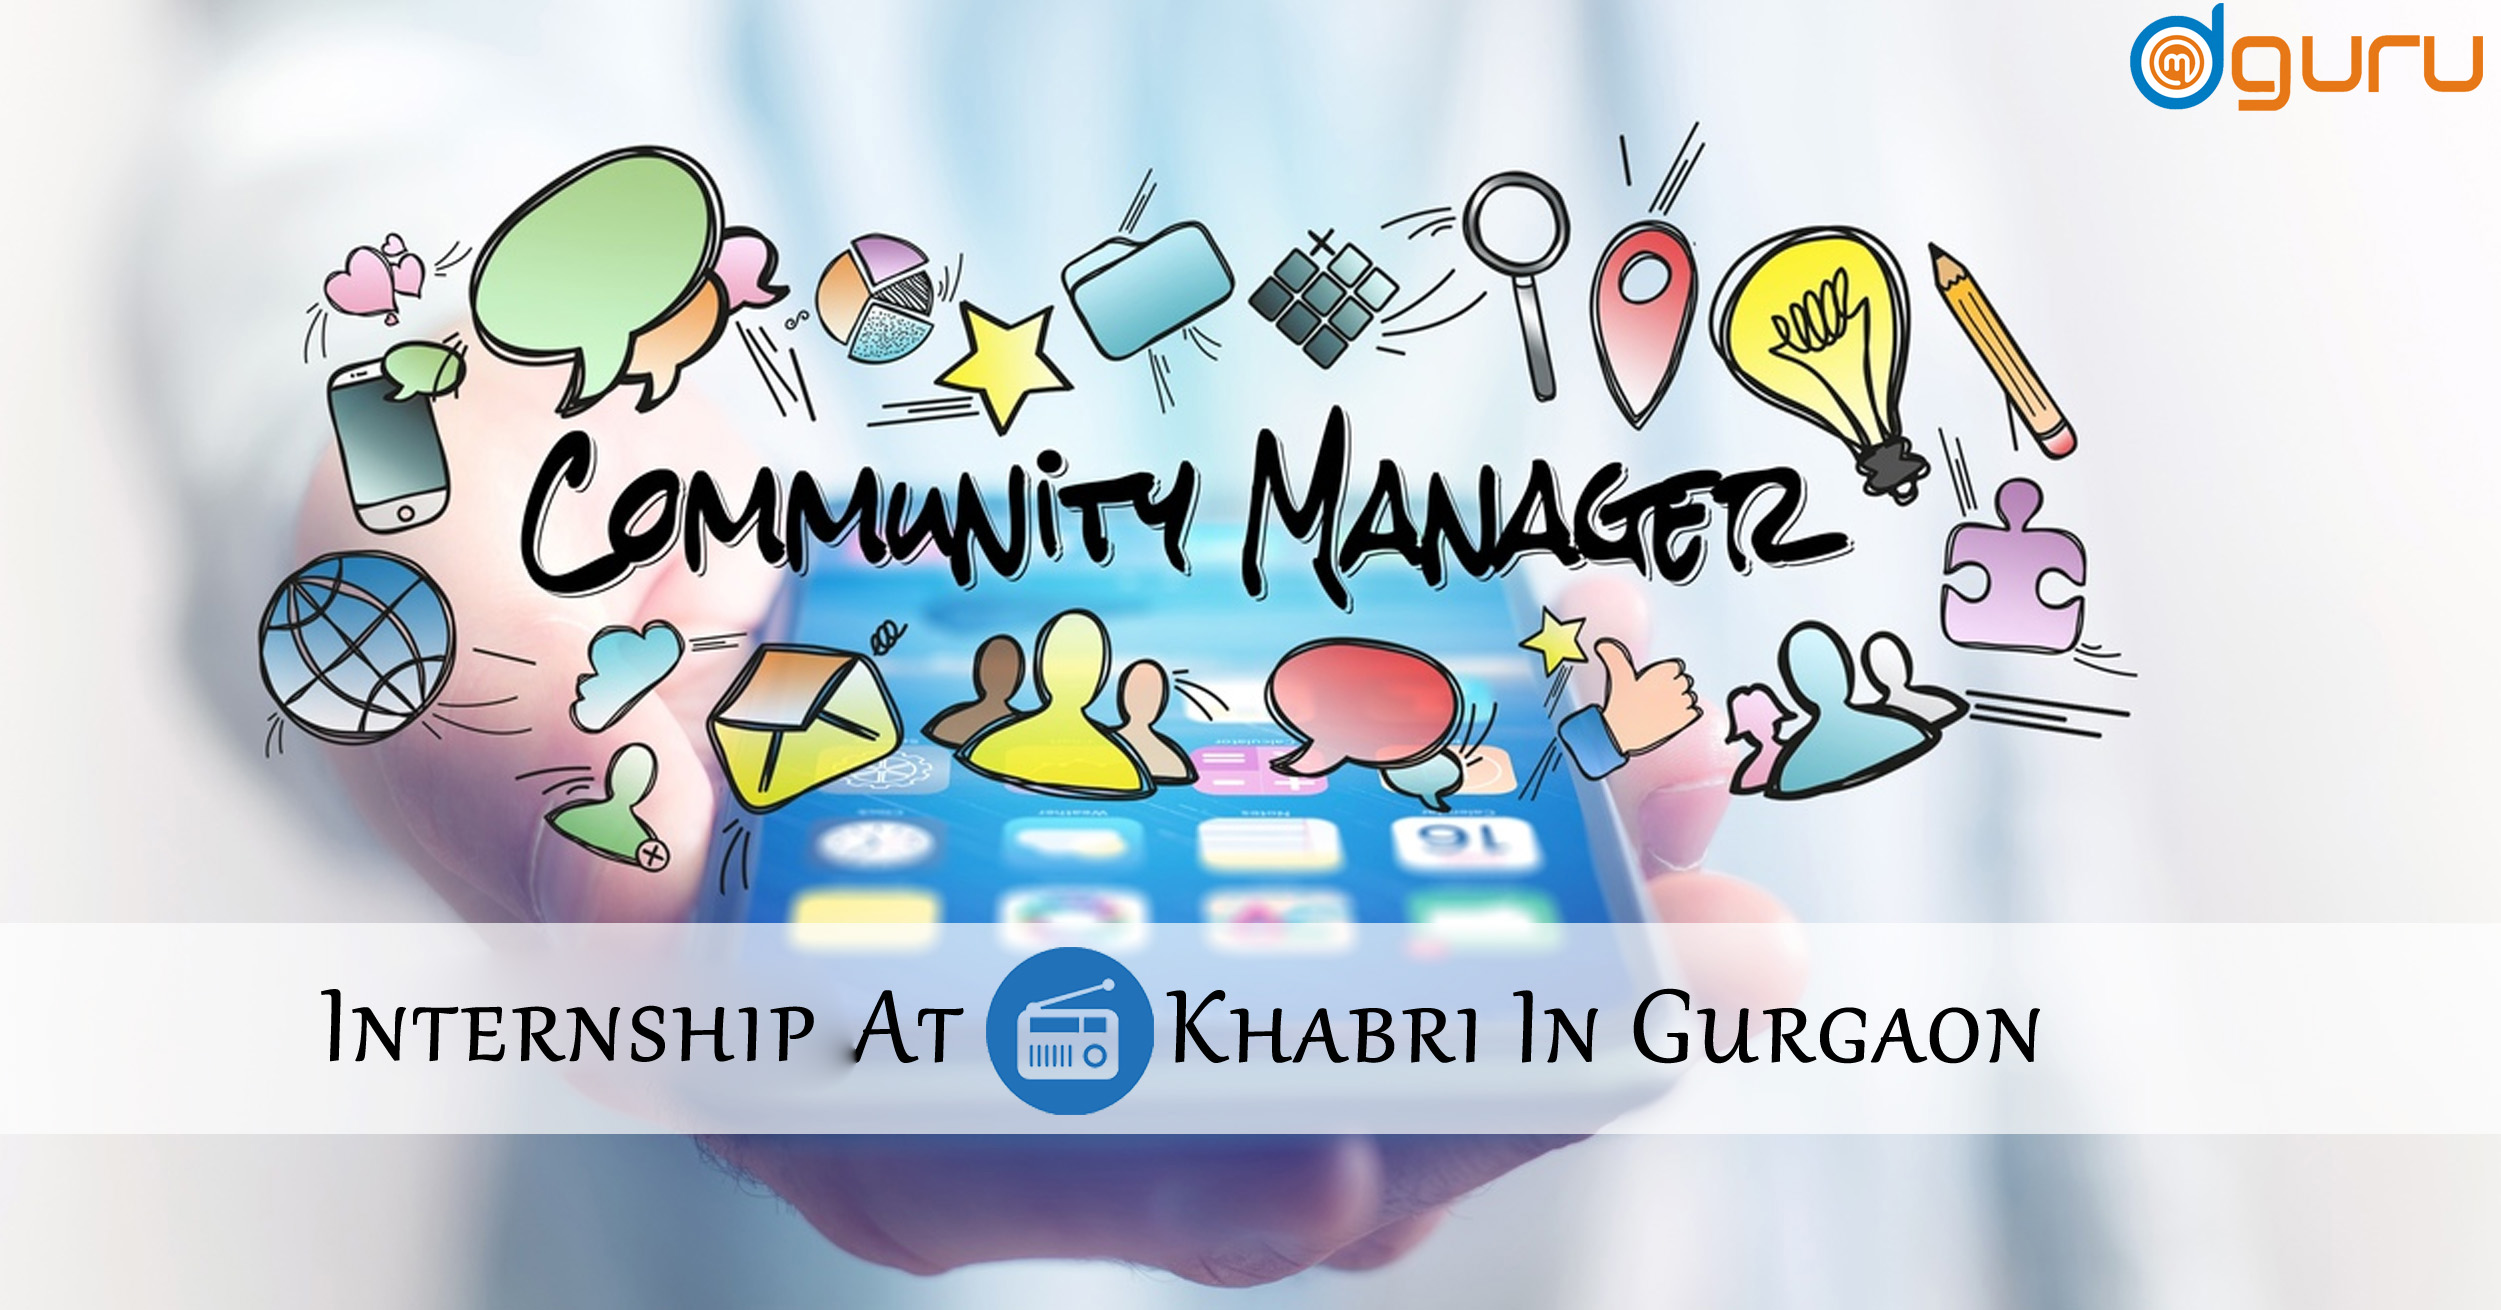 Community Manager Job/Vacancy at Khabri Gurgaon, India